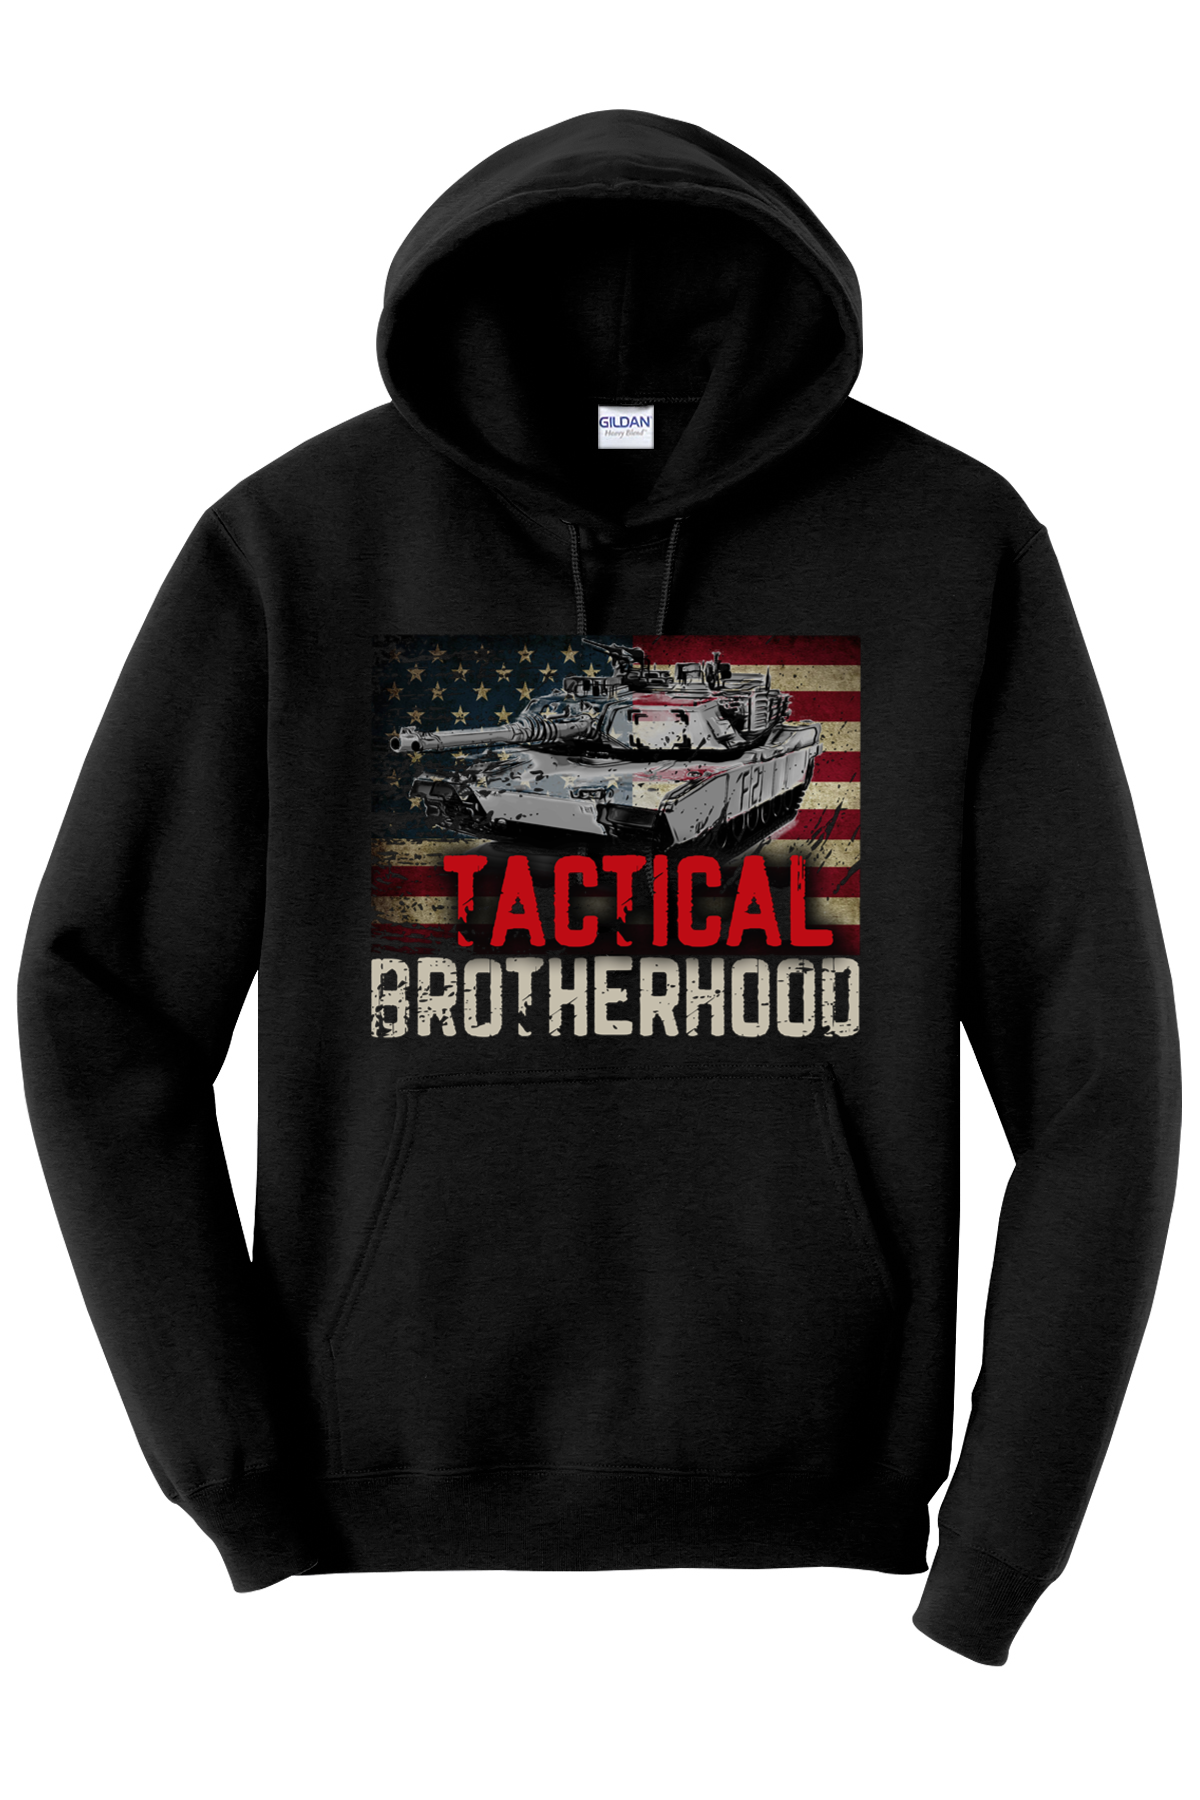 OG 1 - M1 Abrams - Tactical Brotherhood Hoodie